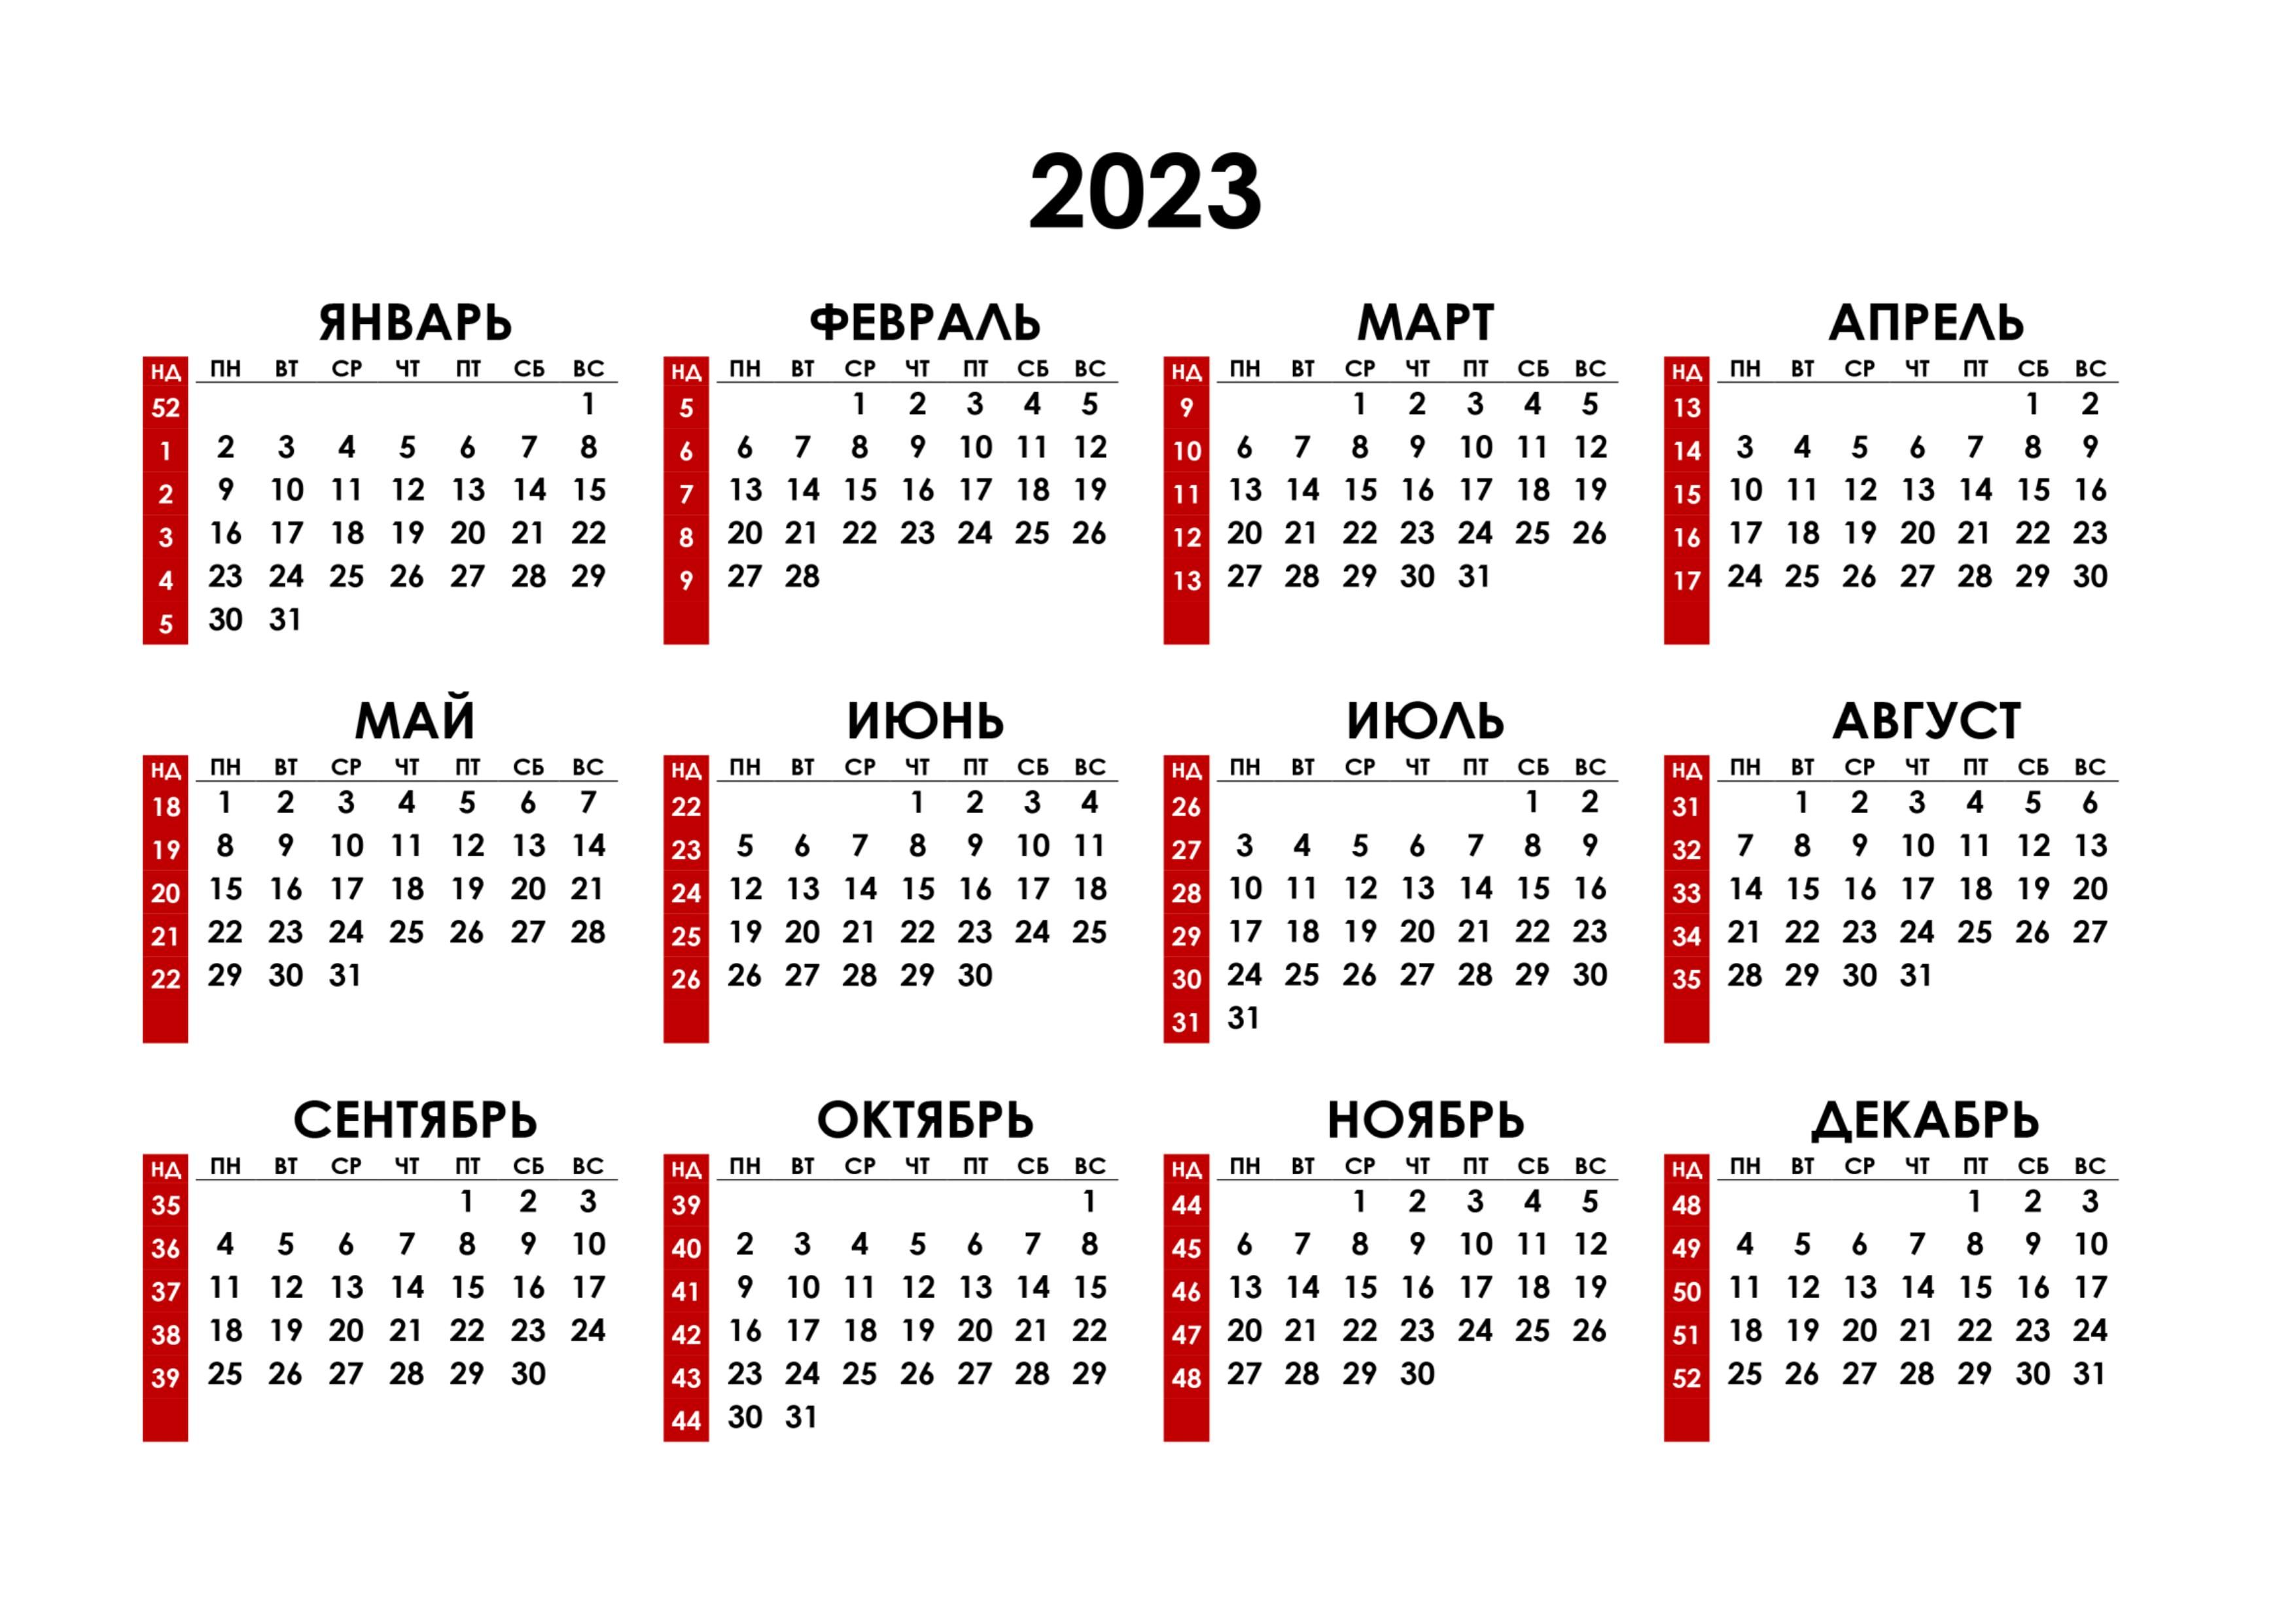 Календарь 2023 год рфпл. Календарь на 2023 год. Календарь с номерами недель 2023. Календарь синомерами недель. Hrfktylfhm PF 2023 ujl.